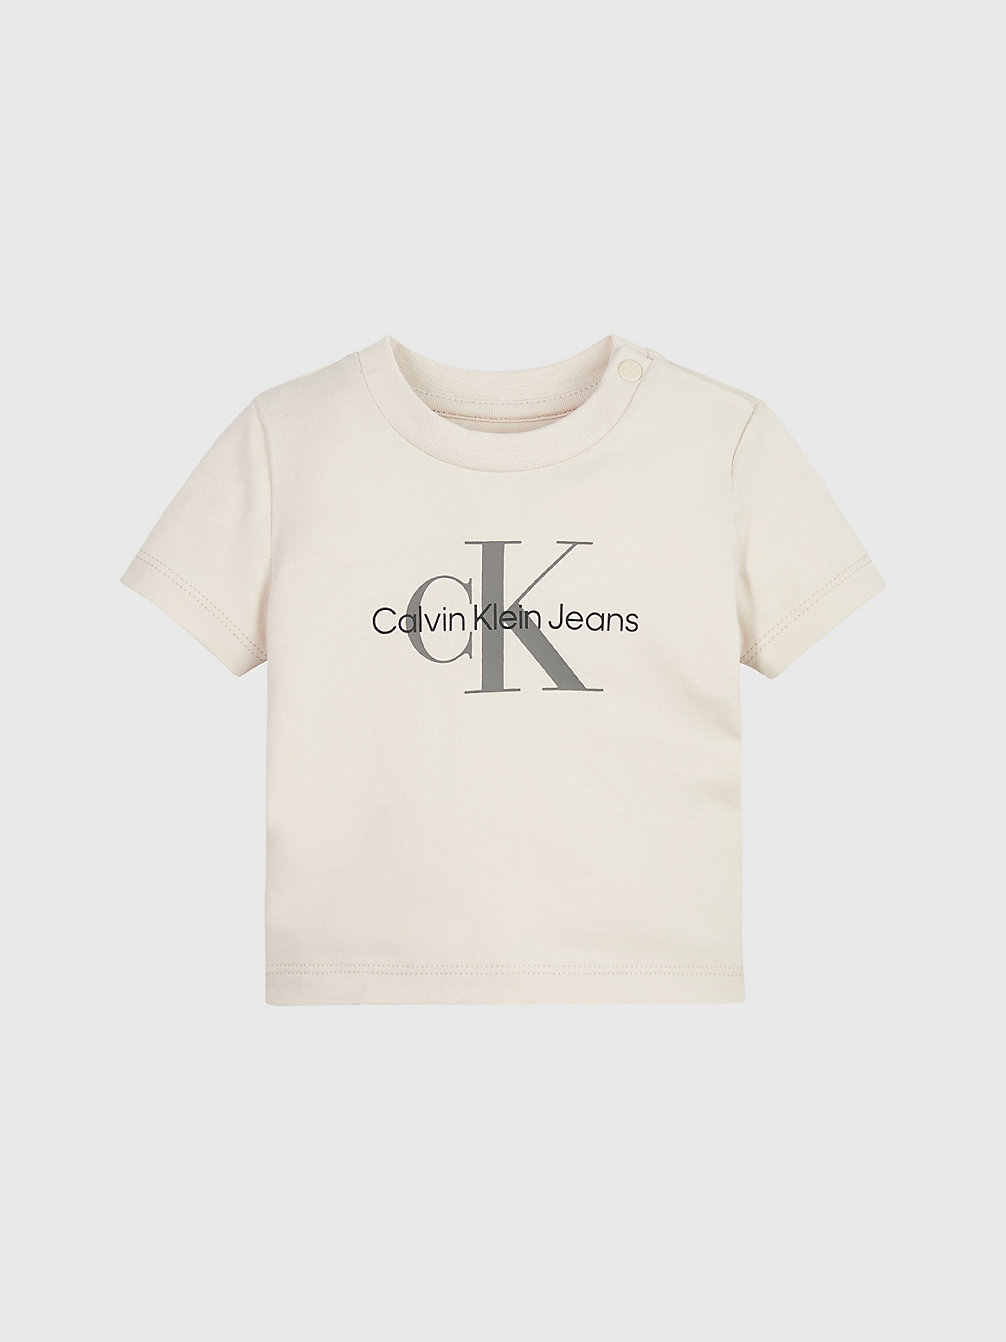 WHITECAP GRAY Newborn Logo T-Shirt undefined newborn Calvin Klein